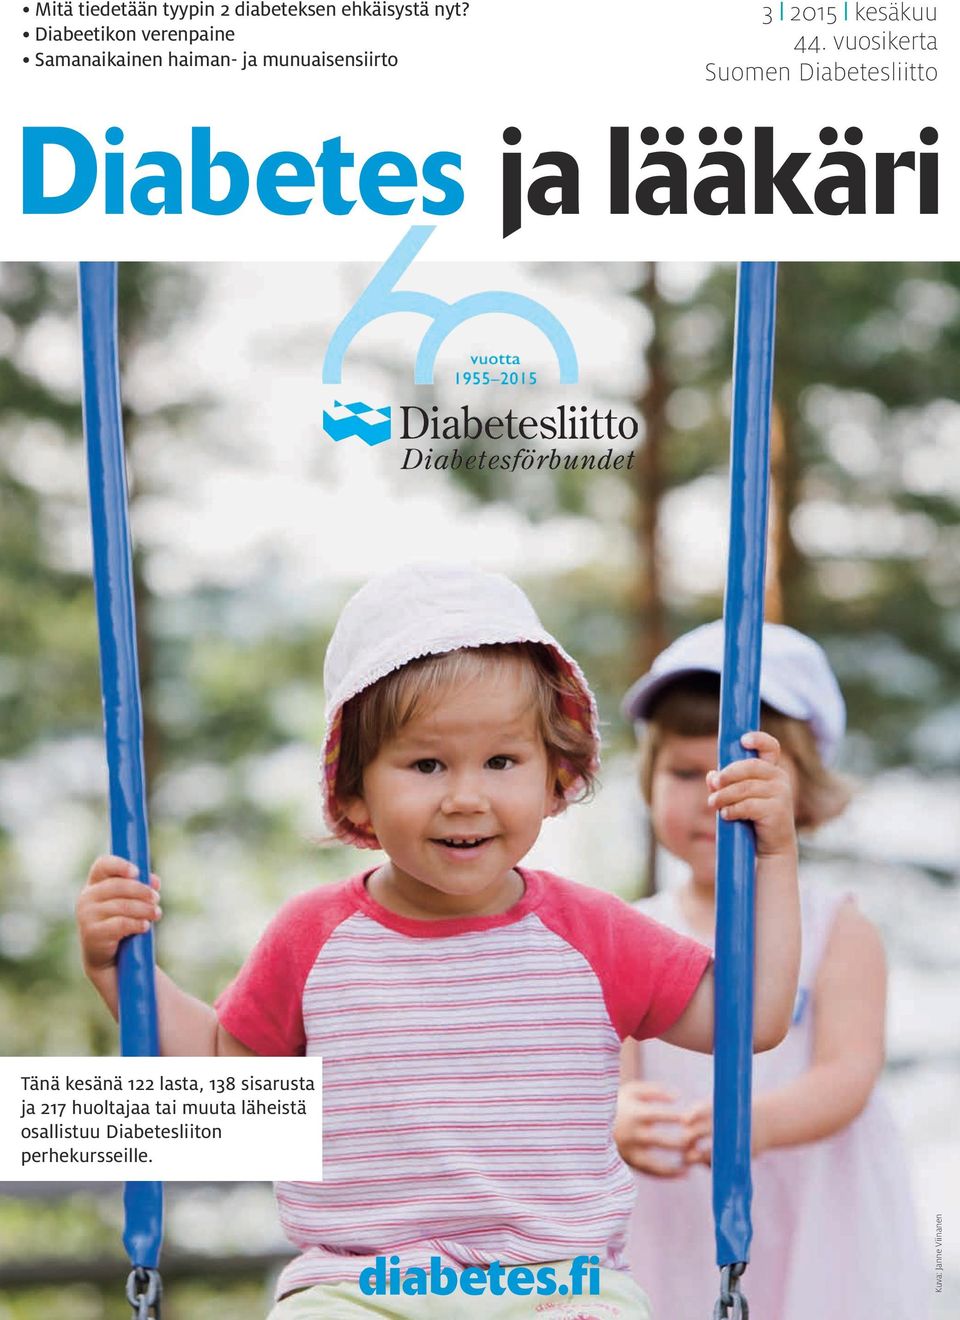 vuosikerta Suomen Diabetesliitto Diabetes ja lääkäri Tänä kesänä 122 lasta, 138